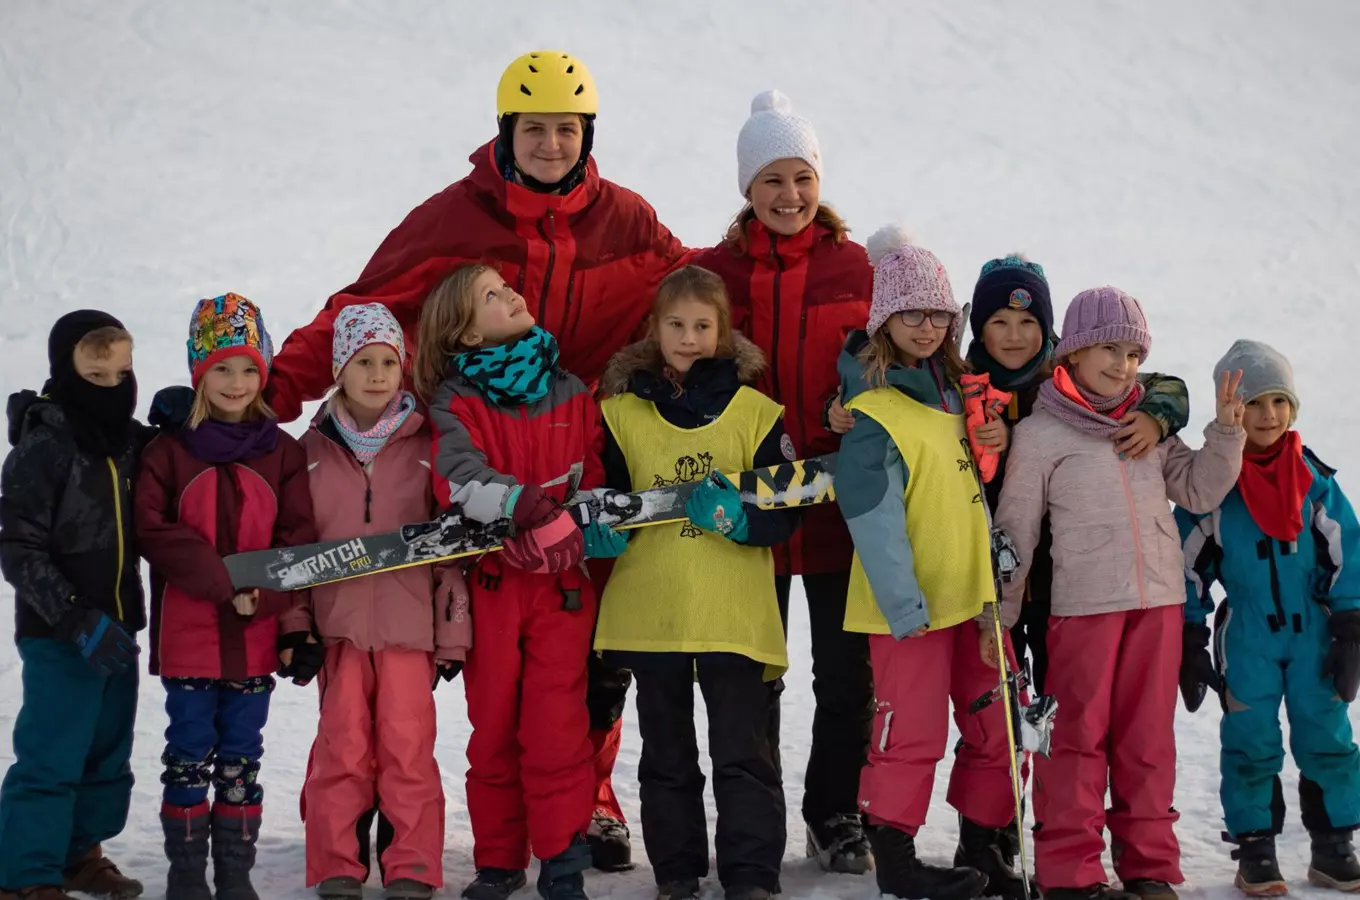 Ski areál Skalka family park